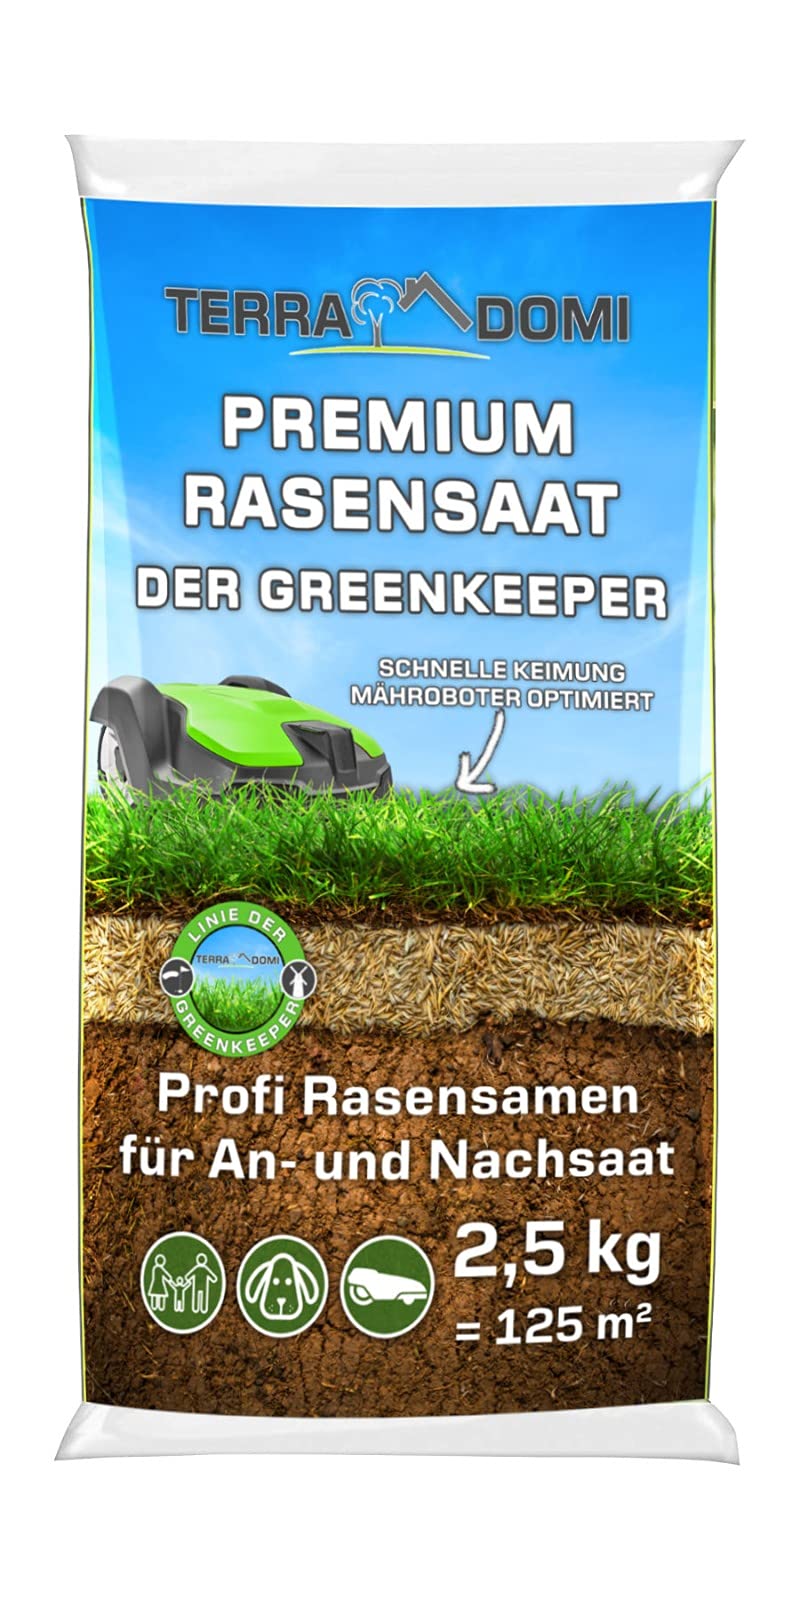 TerraDomi Premium Rasensamen für An-& Nachsaat I Schnellkeimend, robust und für einen dichten grünen Rasen I Mähroboter optimiert I 2,5kg für 125m²